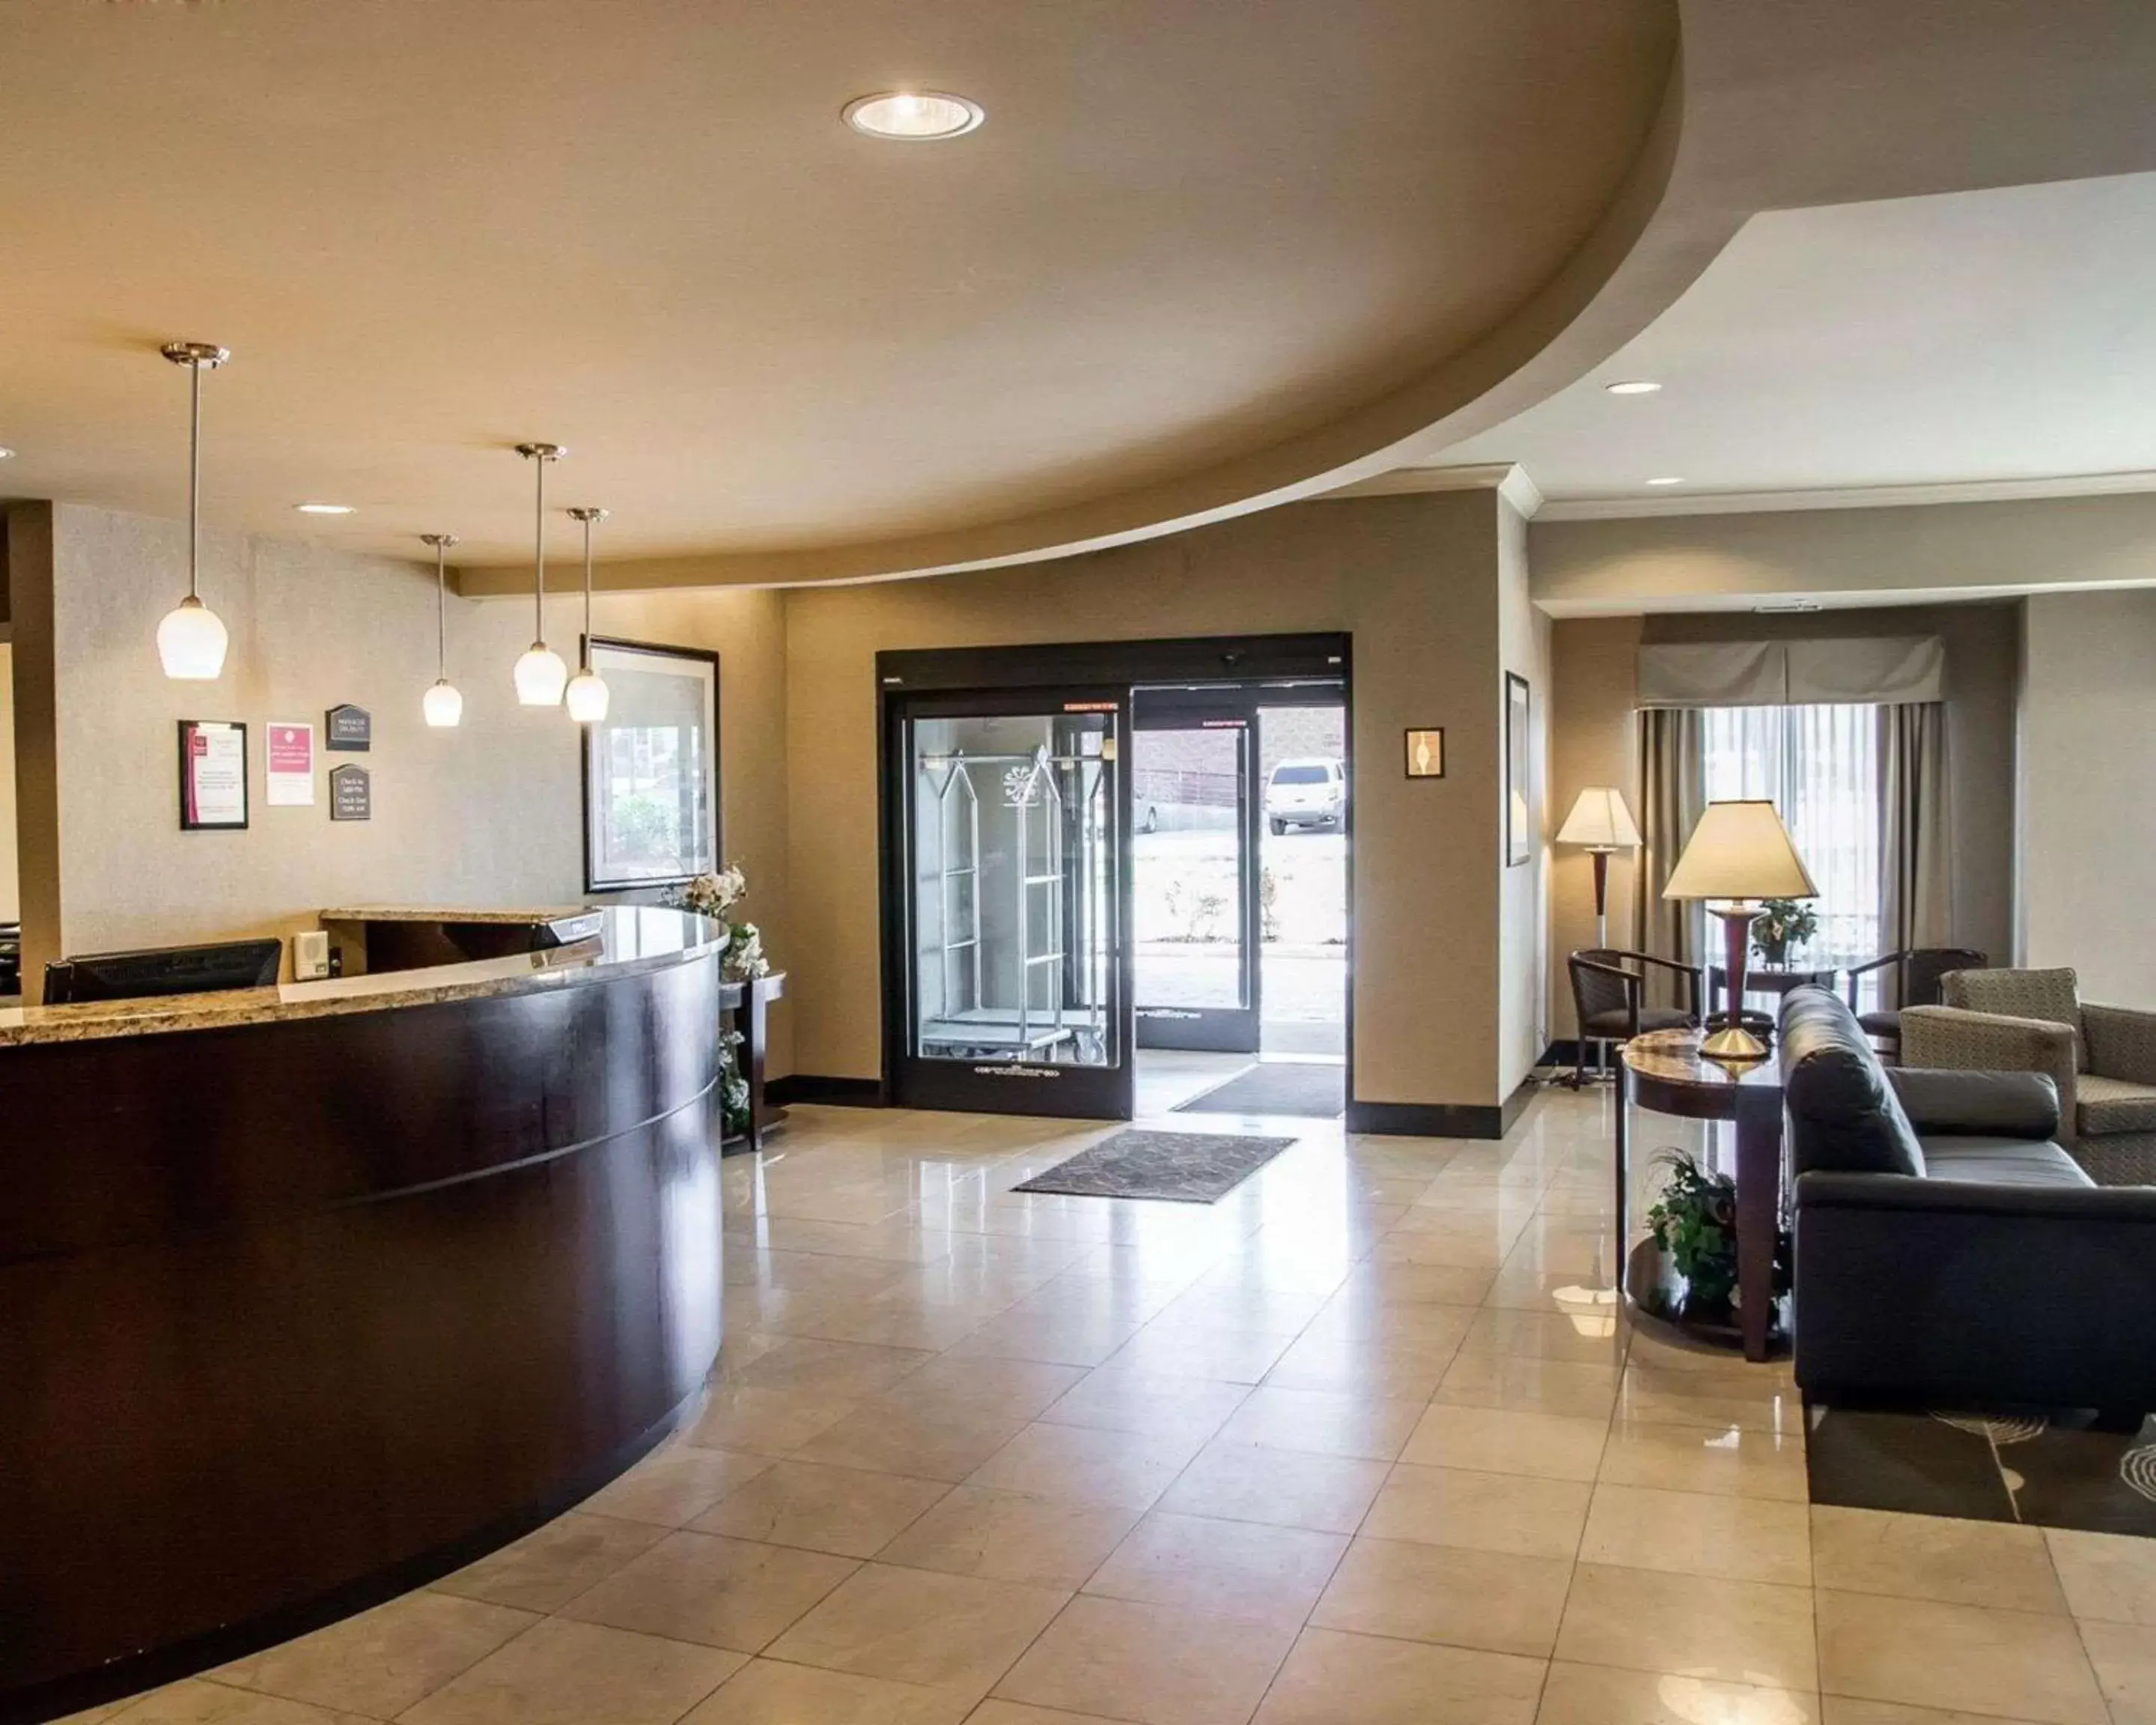 Lobby or reception, Lobby/Reception in Comfort Suites Cincinnati North